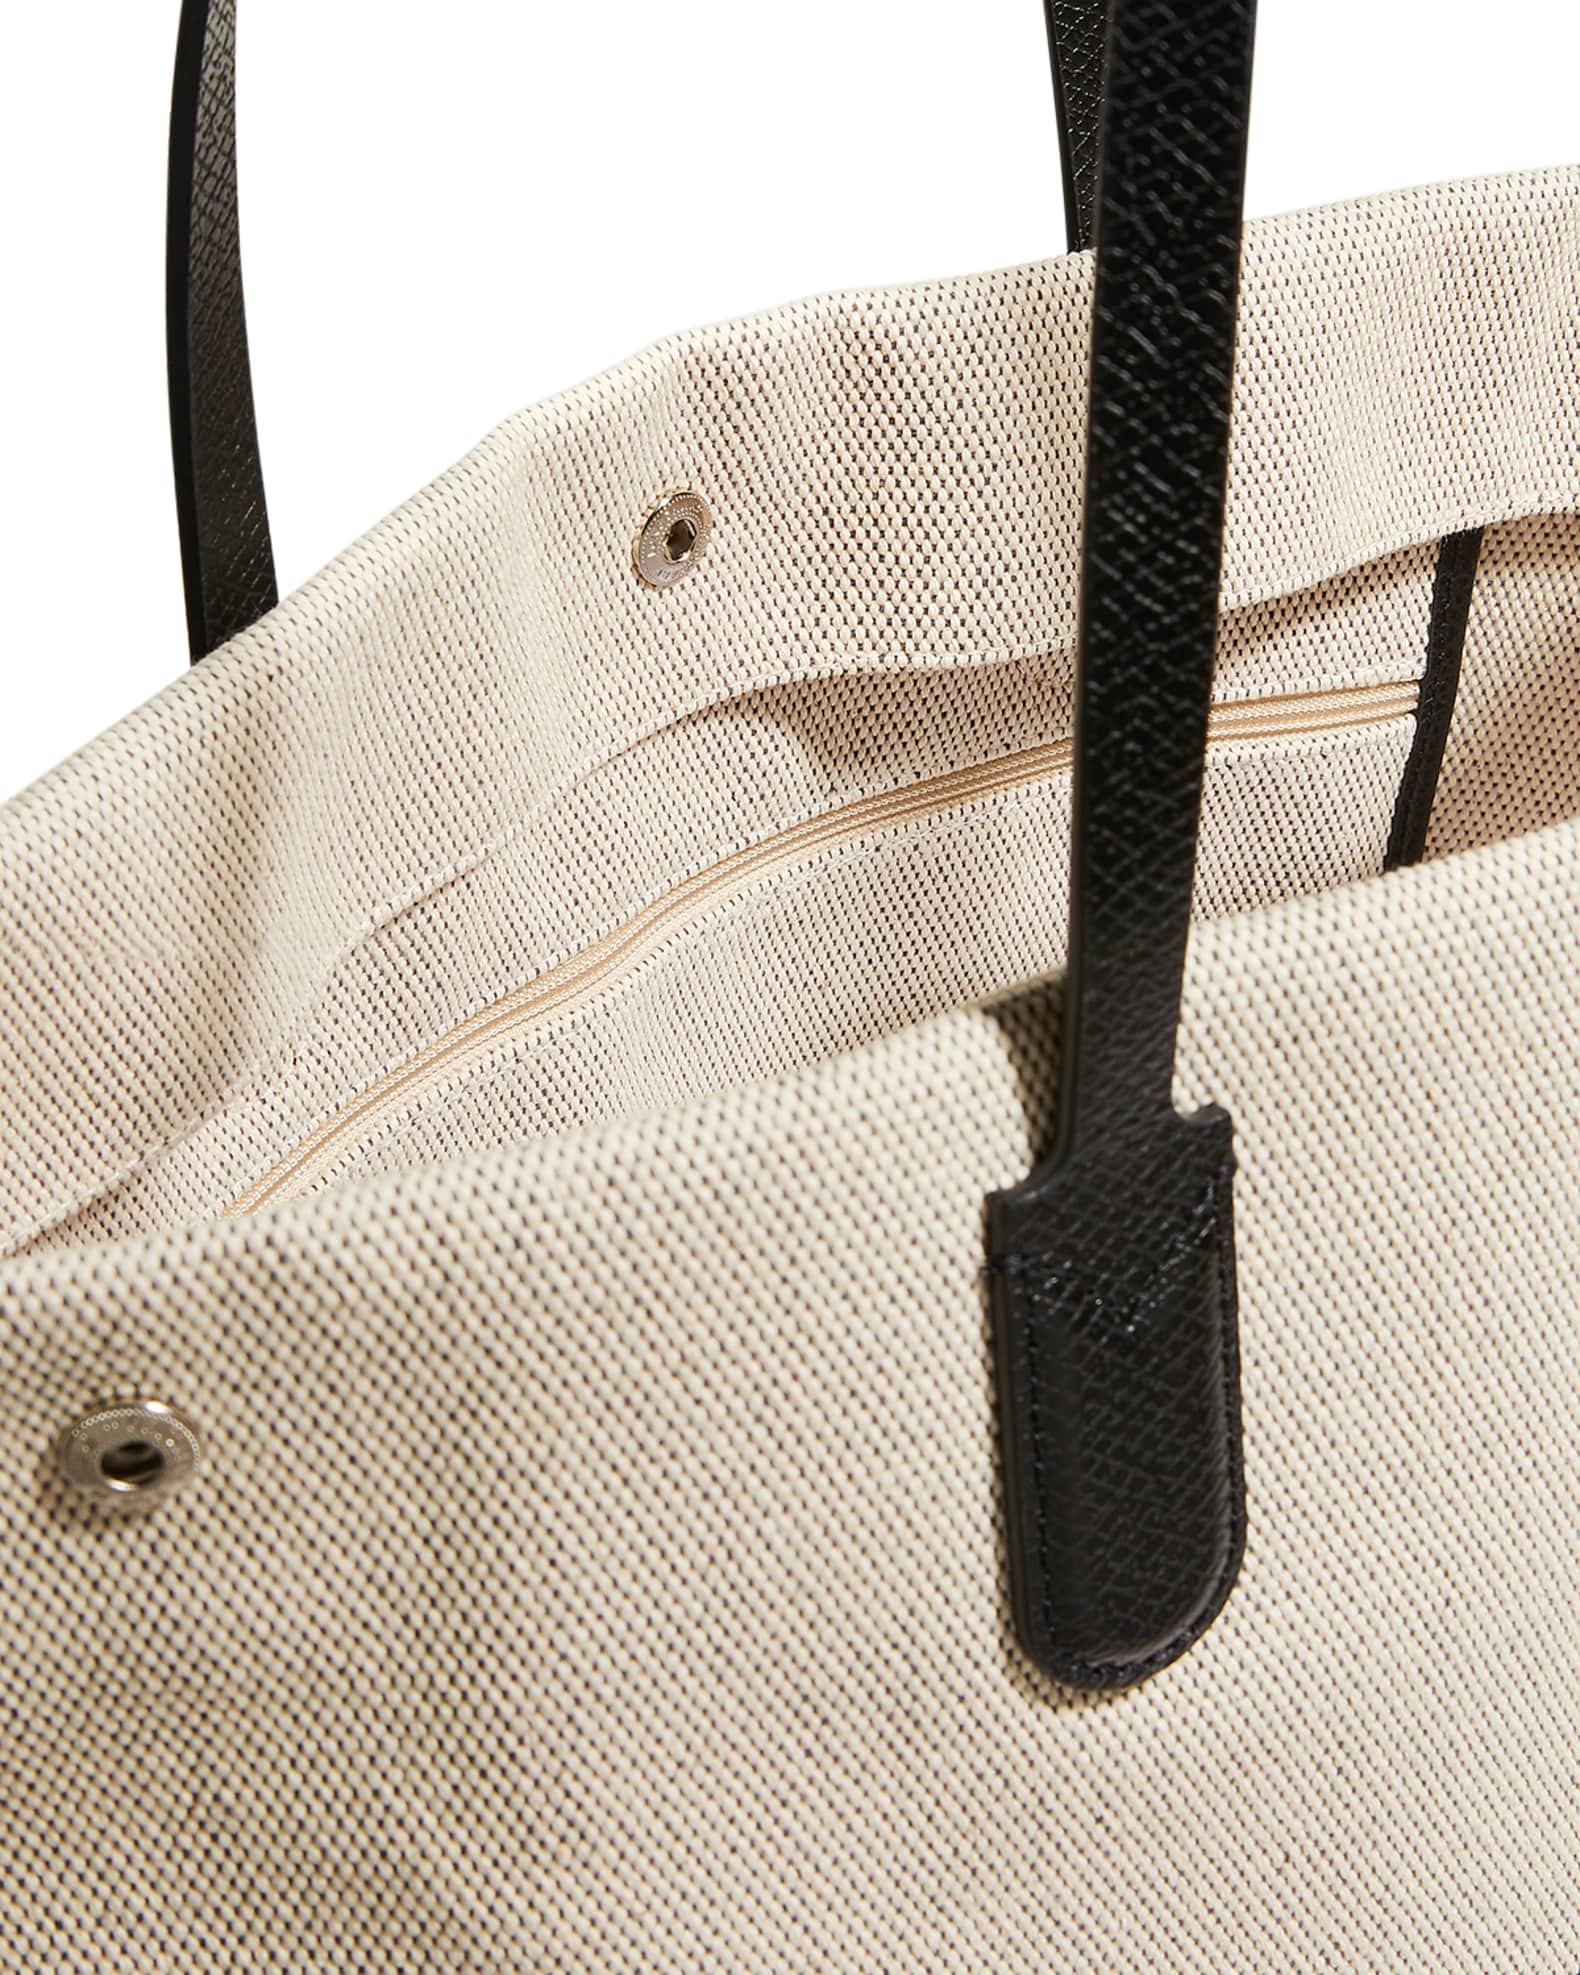 PSA Nordstrom Rack has so many Longchamp bags RN! 📍Nordstrom Rack